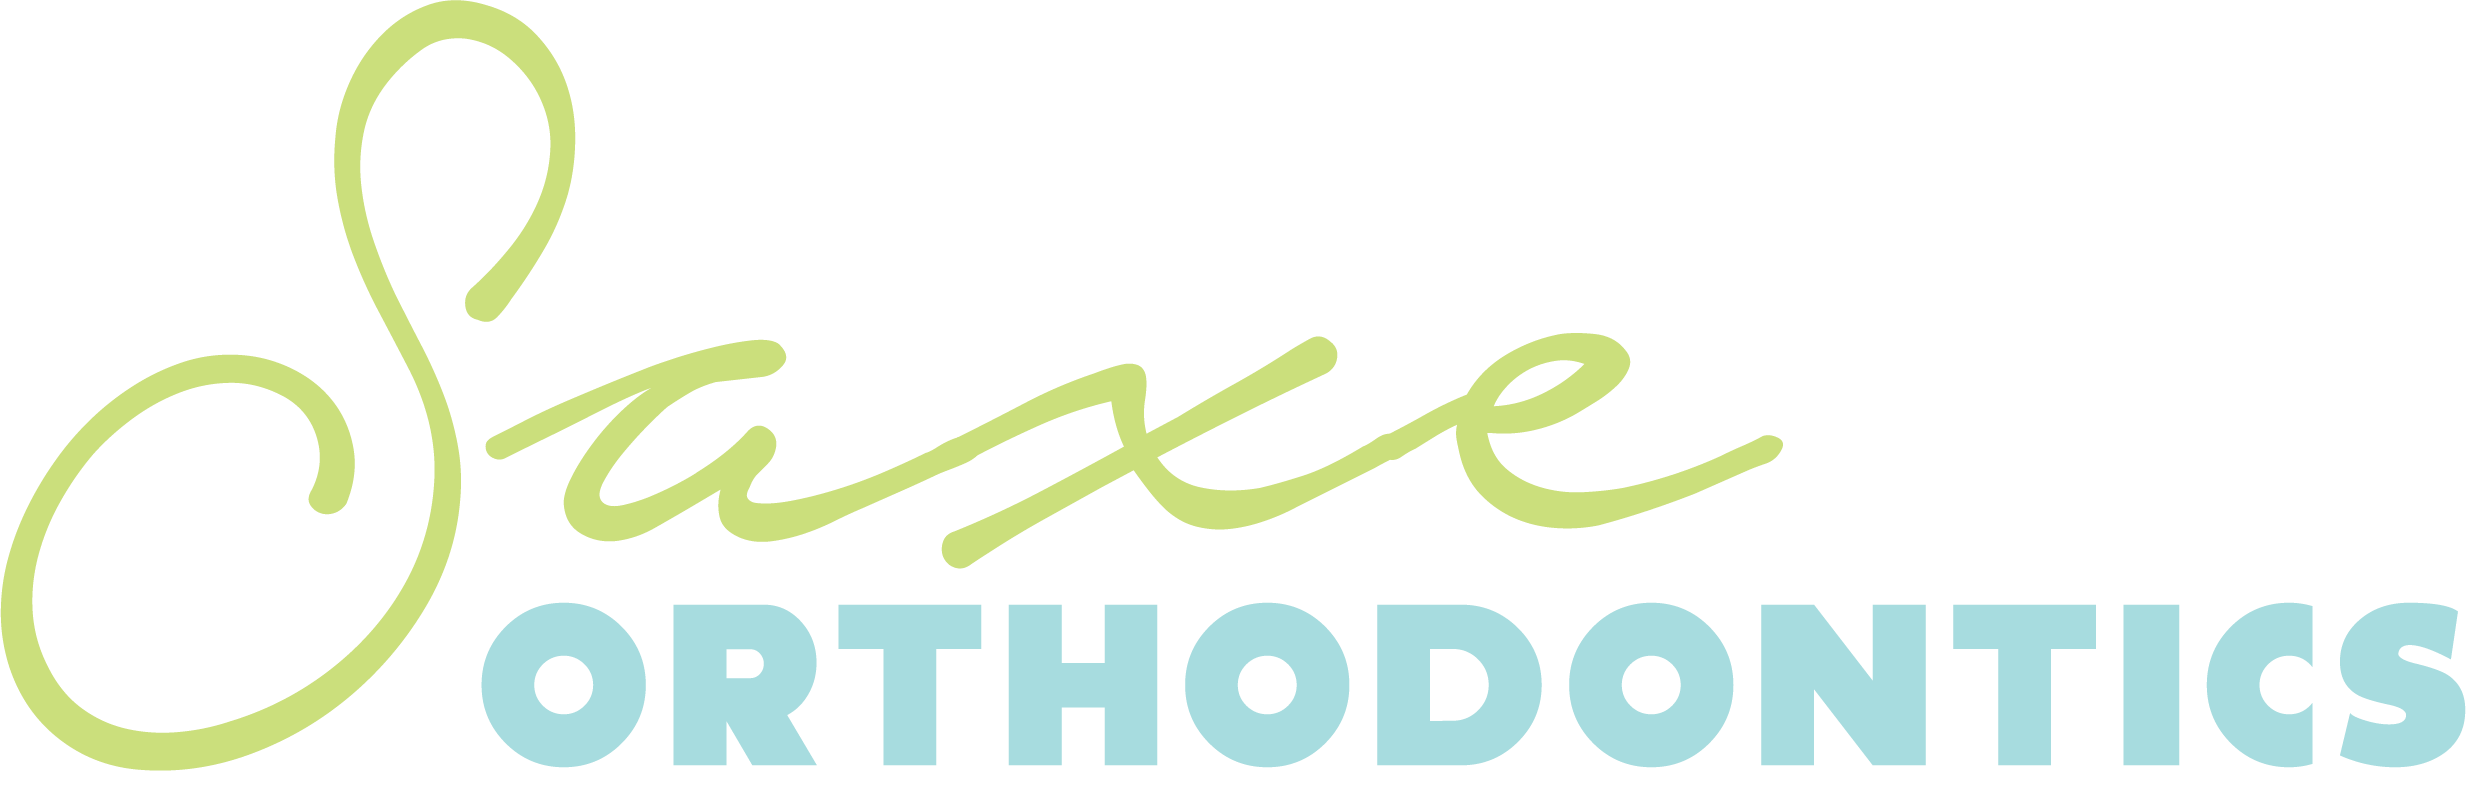 Saxe's orthodontics Logo